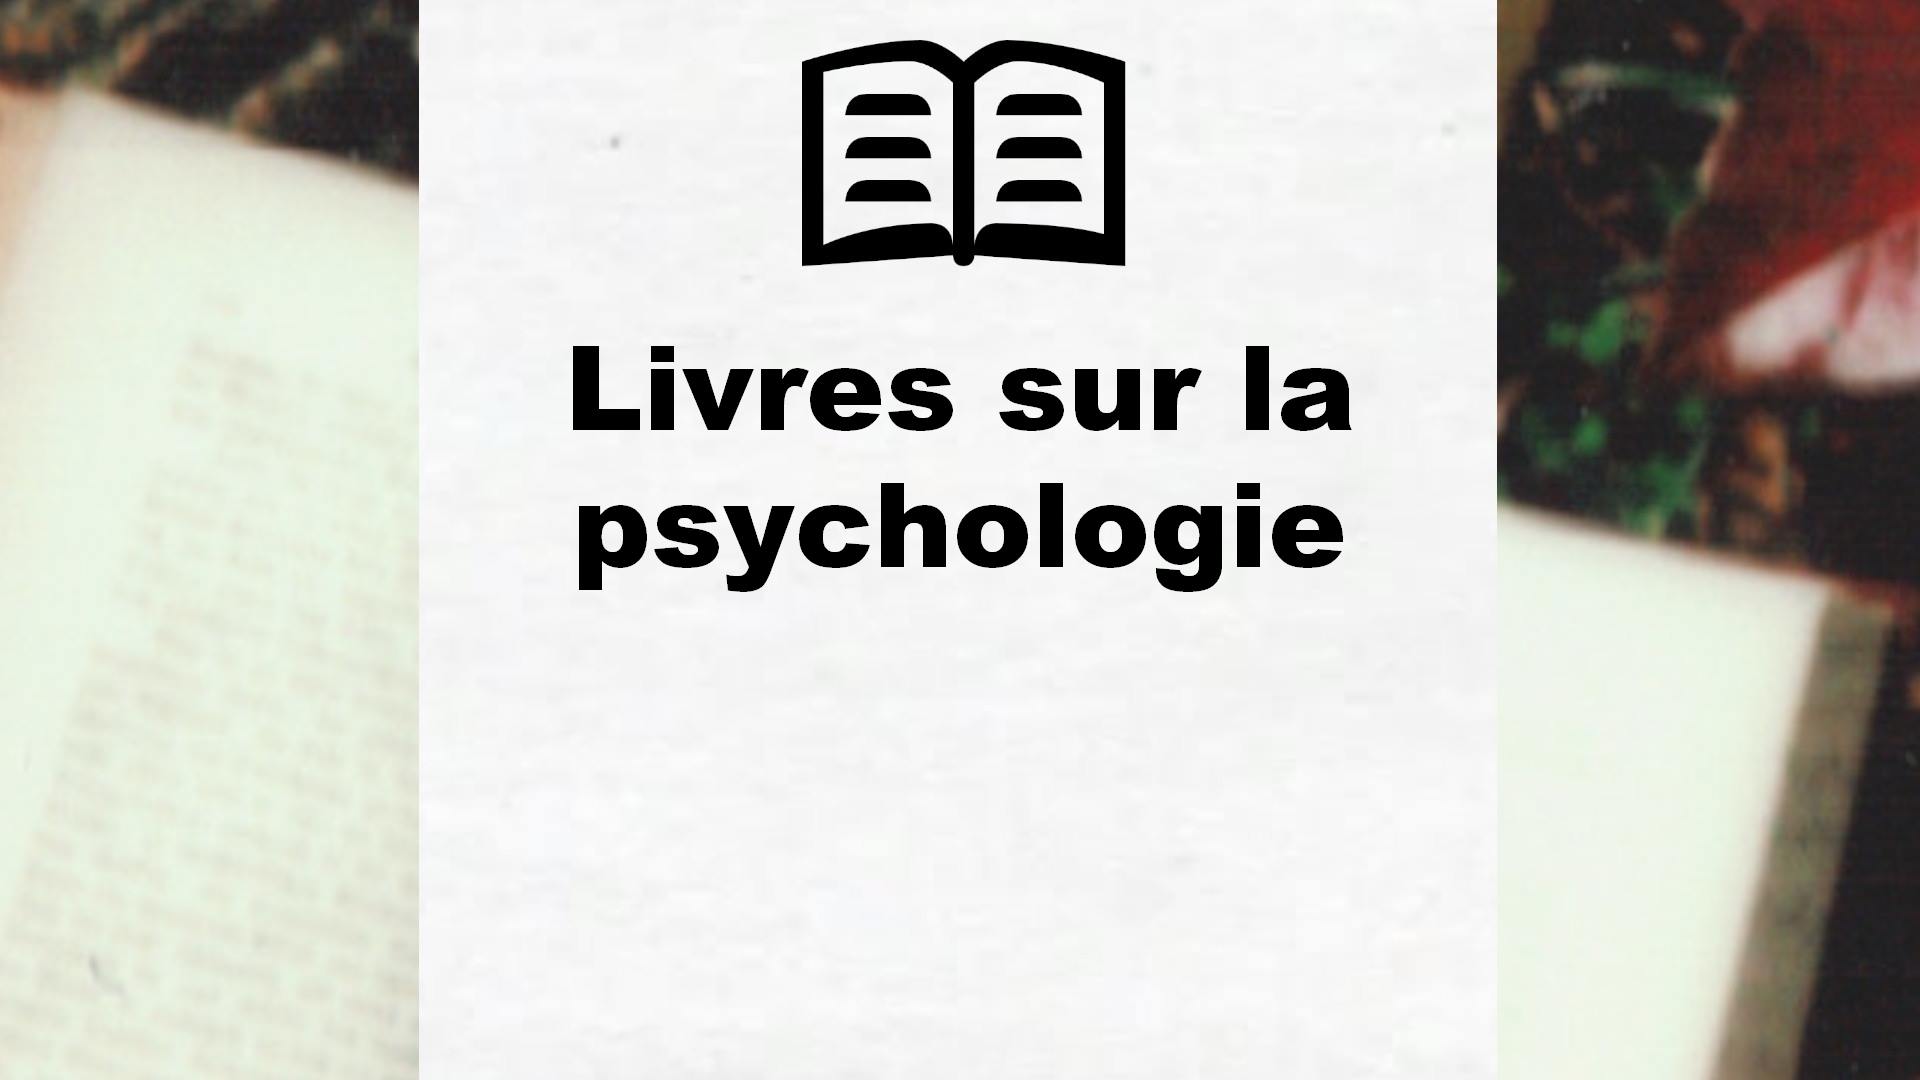 Livres sur la psychologie